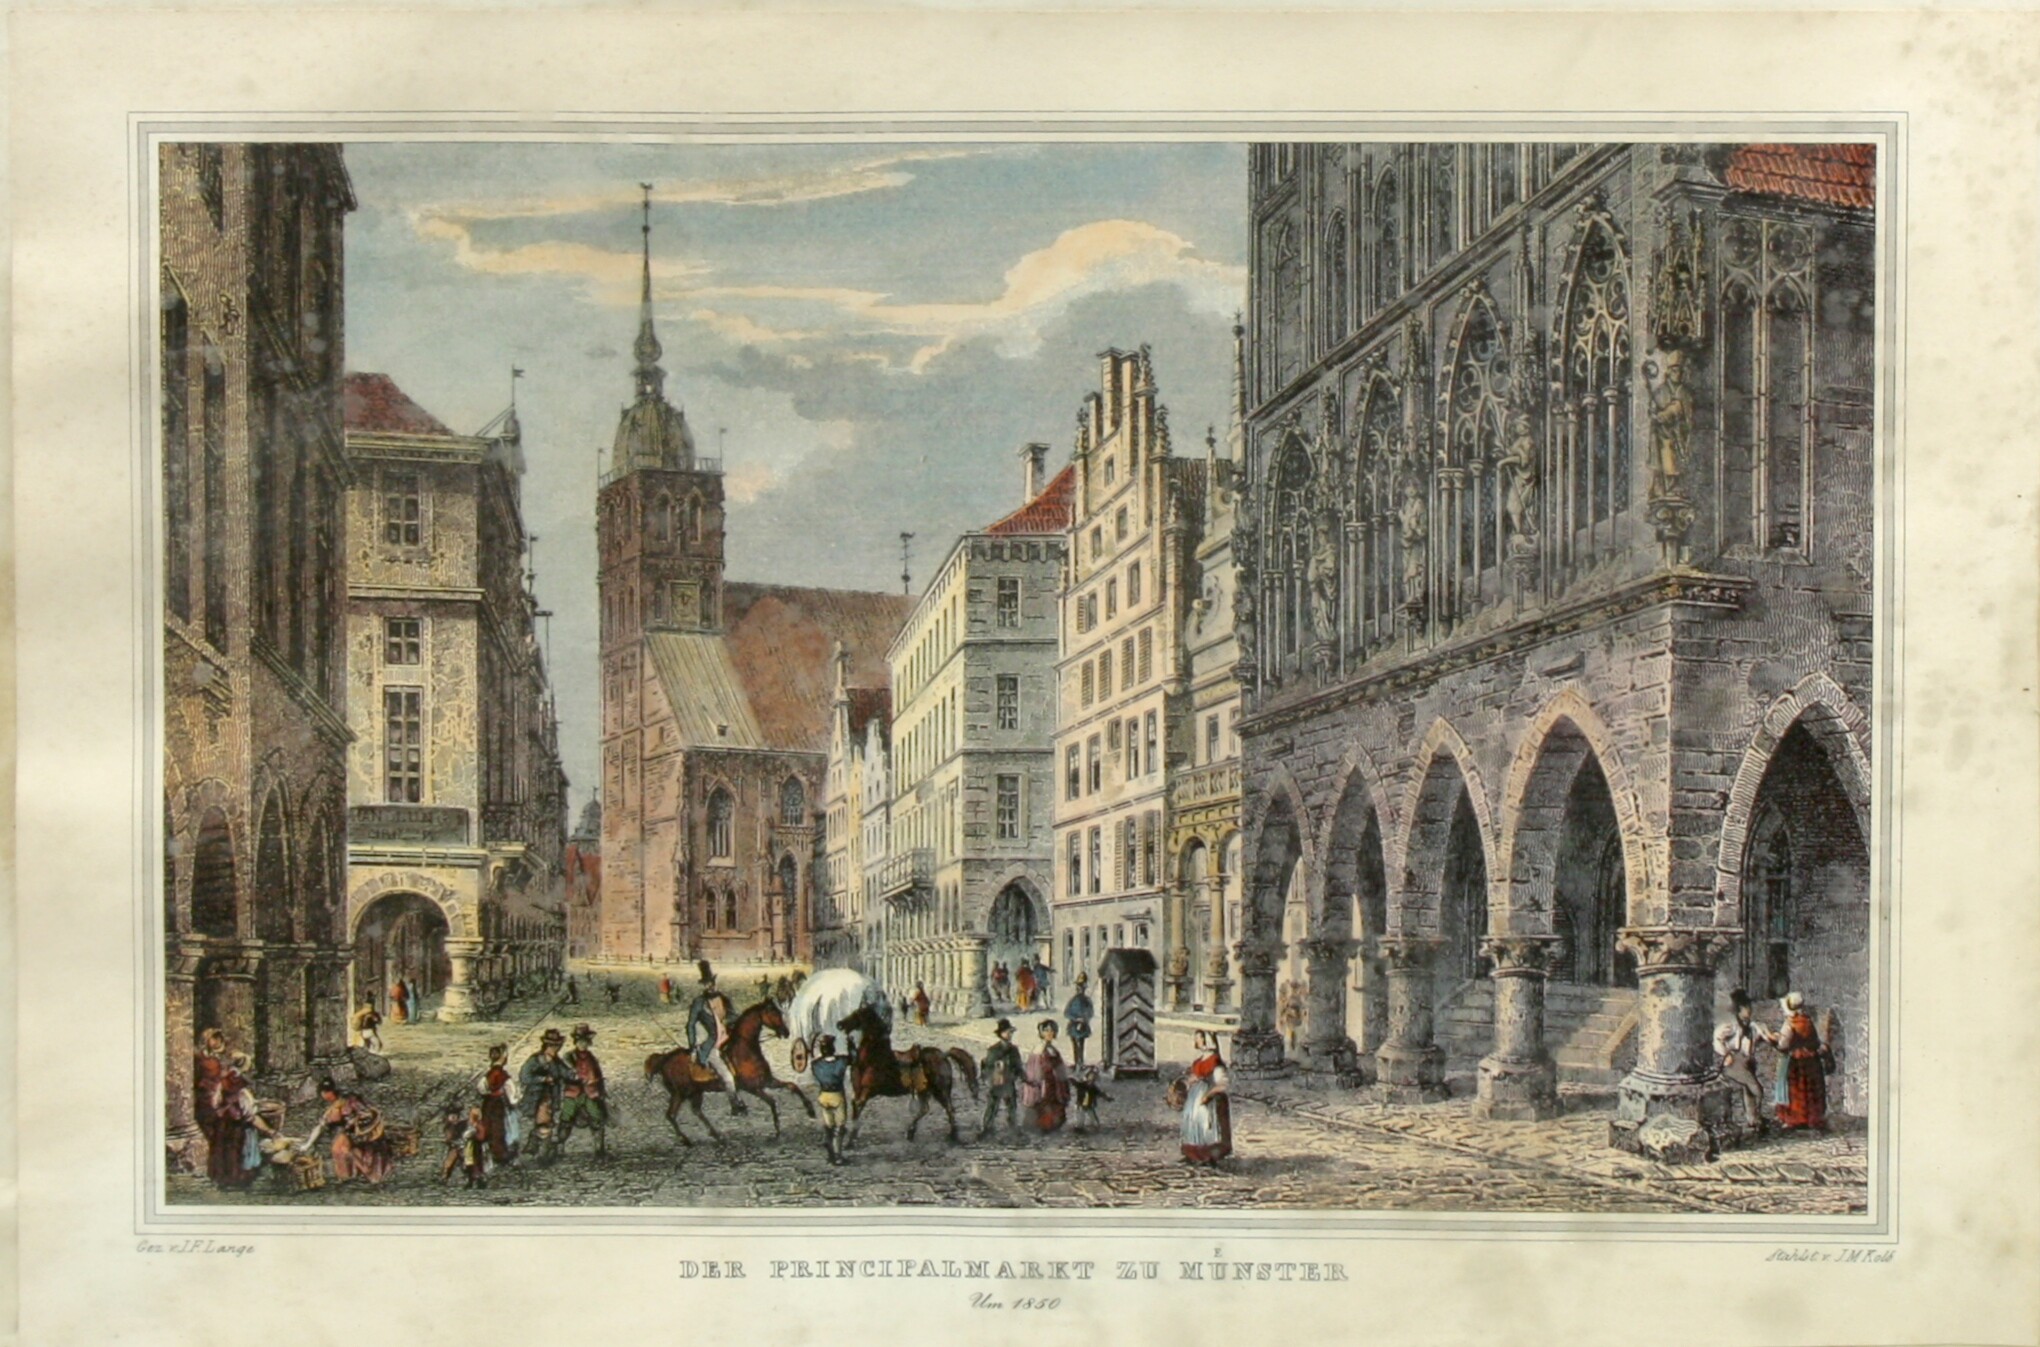 Druck: "Der Prinzipalmarkt zu Münster" (Drilandmuseum CC BY-NC-SA)